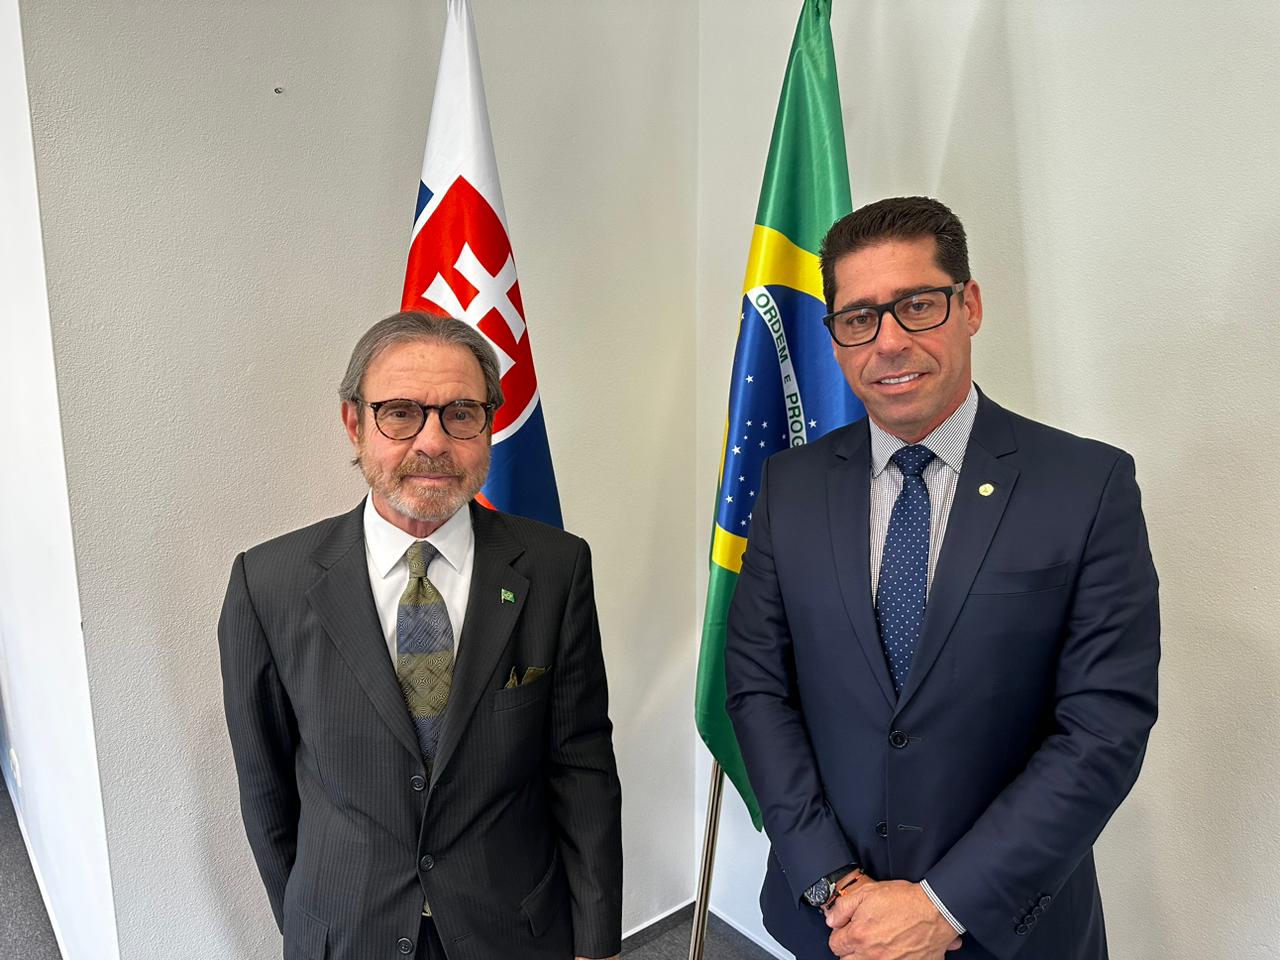 Em reunião na embaixada brasileira na Eslováquia o Presidente da Ales Marcelo Santos avança nas conversas em busca de firmar parcerias comerciais